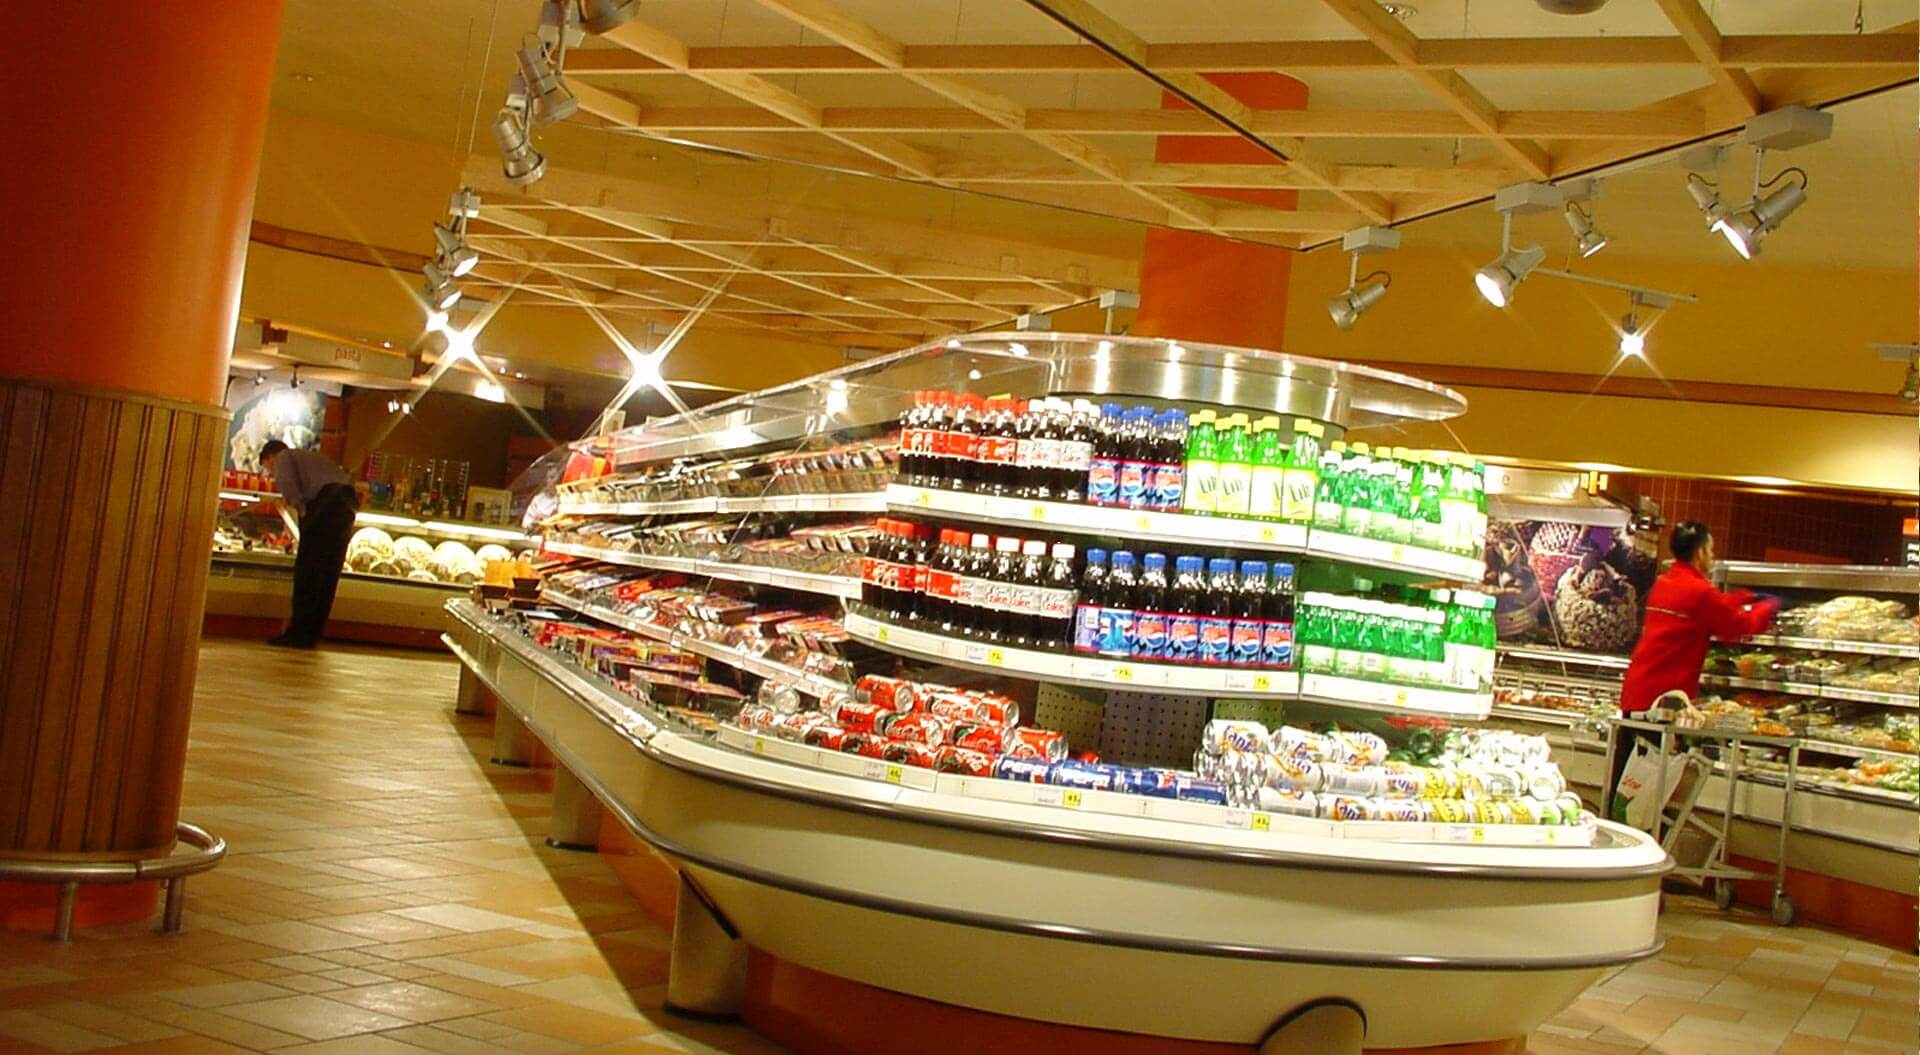 Safeway interior store design for chilled island merchandising in supermarkets